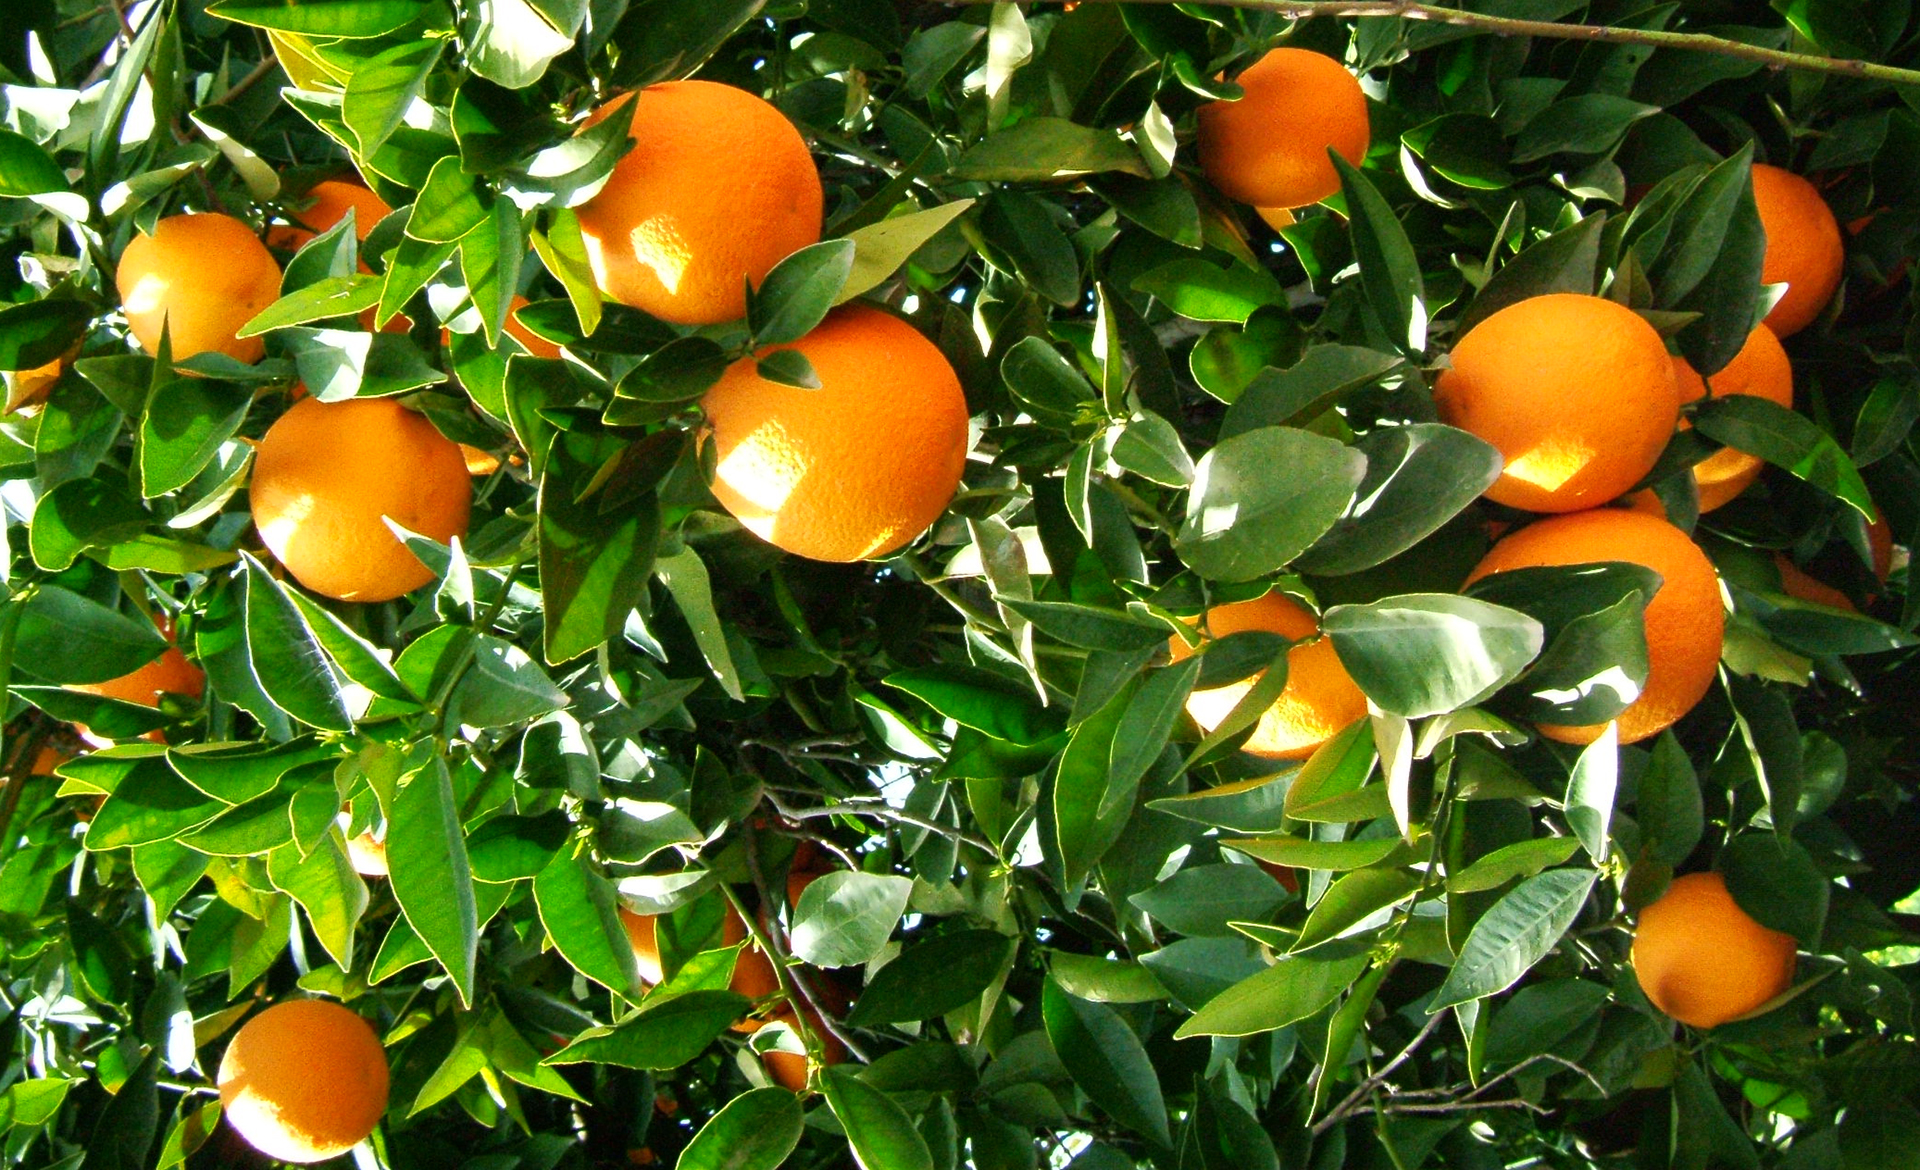 Άρτα: Έκλεψαν από περιβόλι δύο τόνους πορτοκάλια